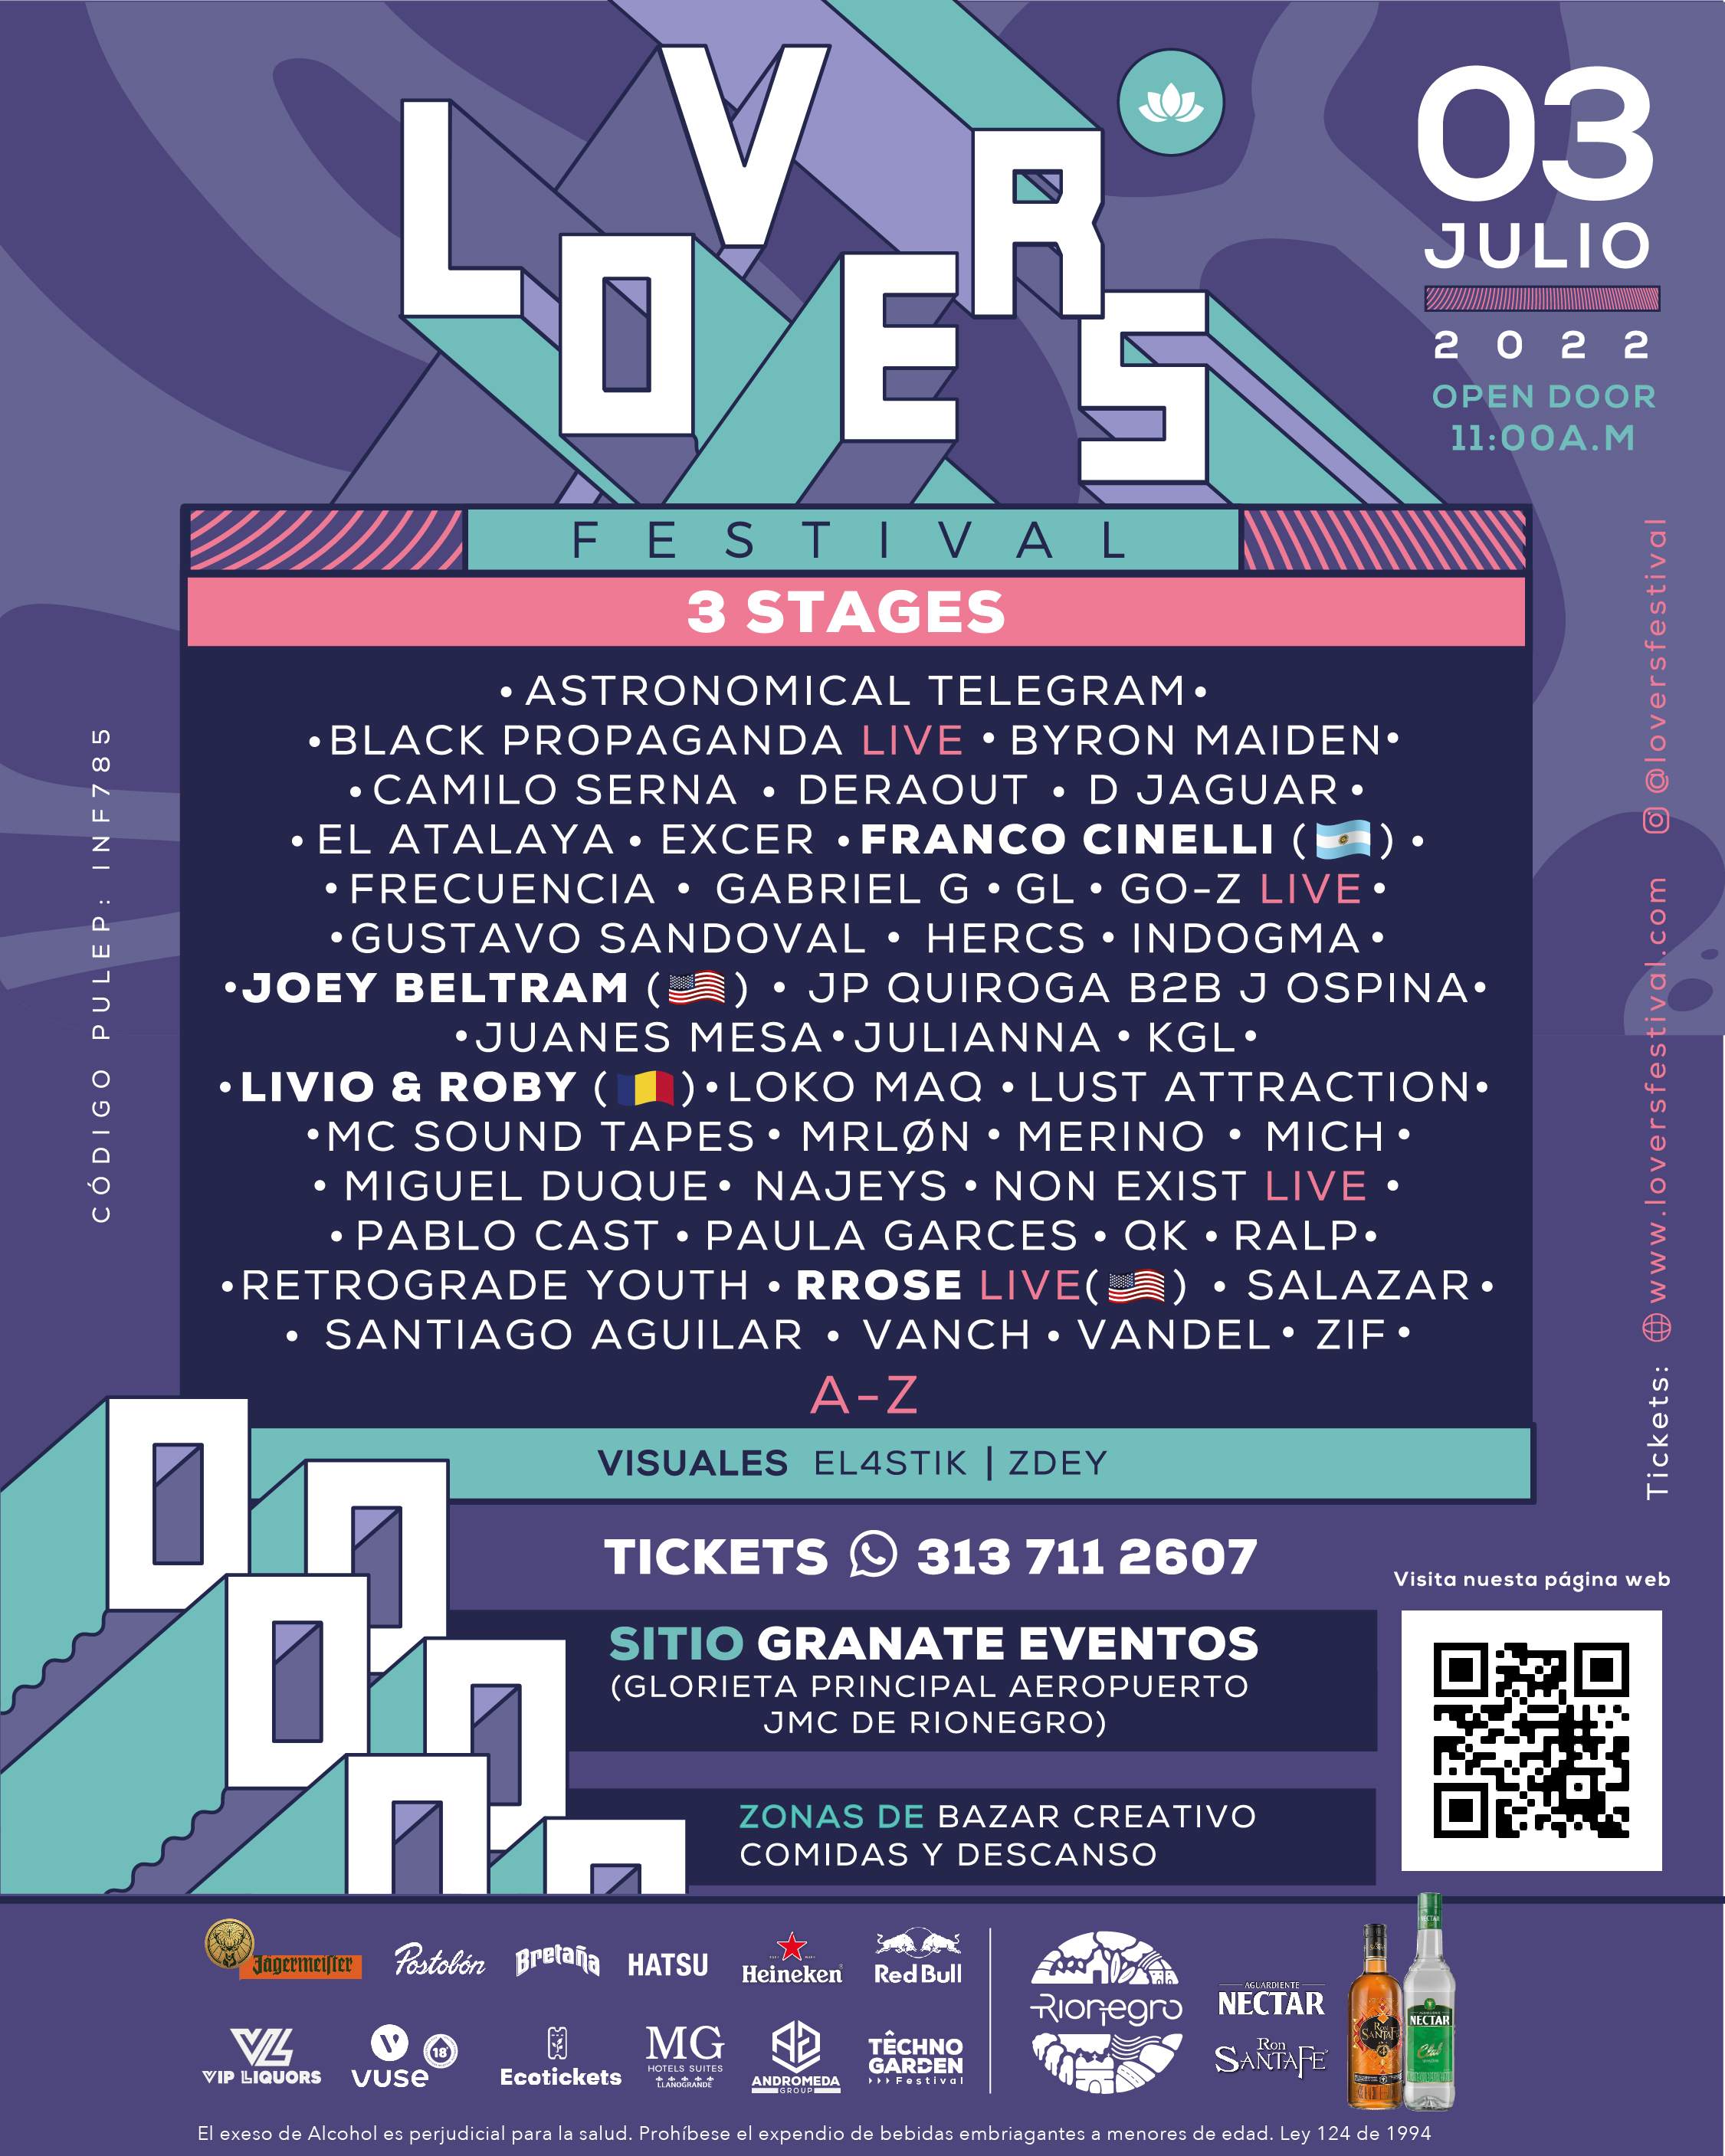 Lovers Festival 2022 - Página frontal